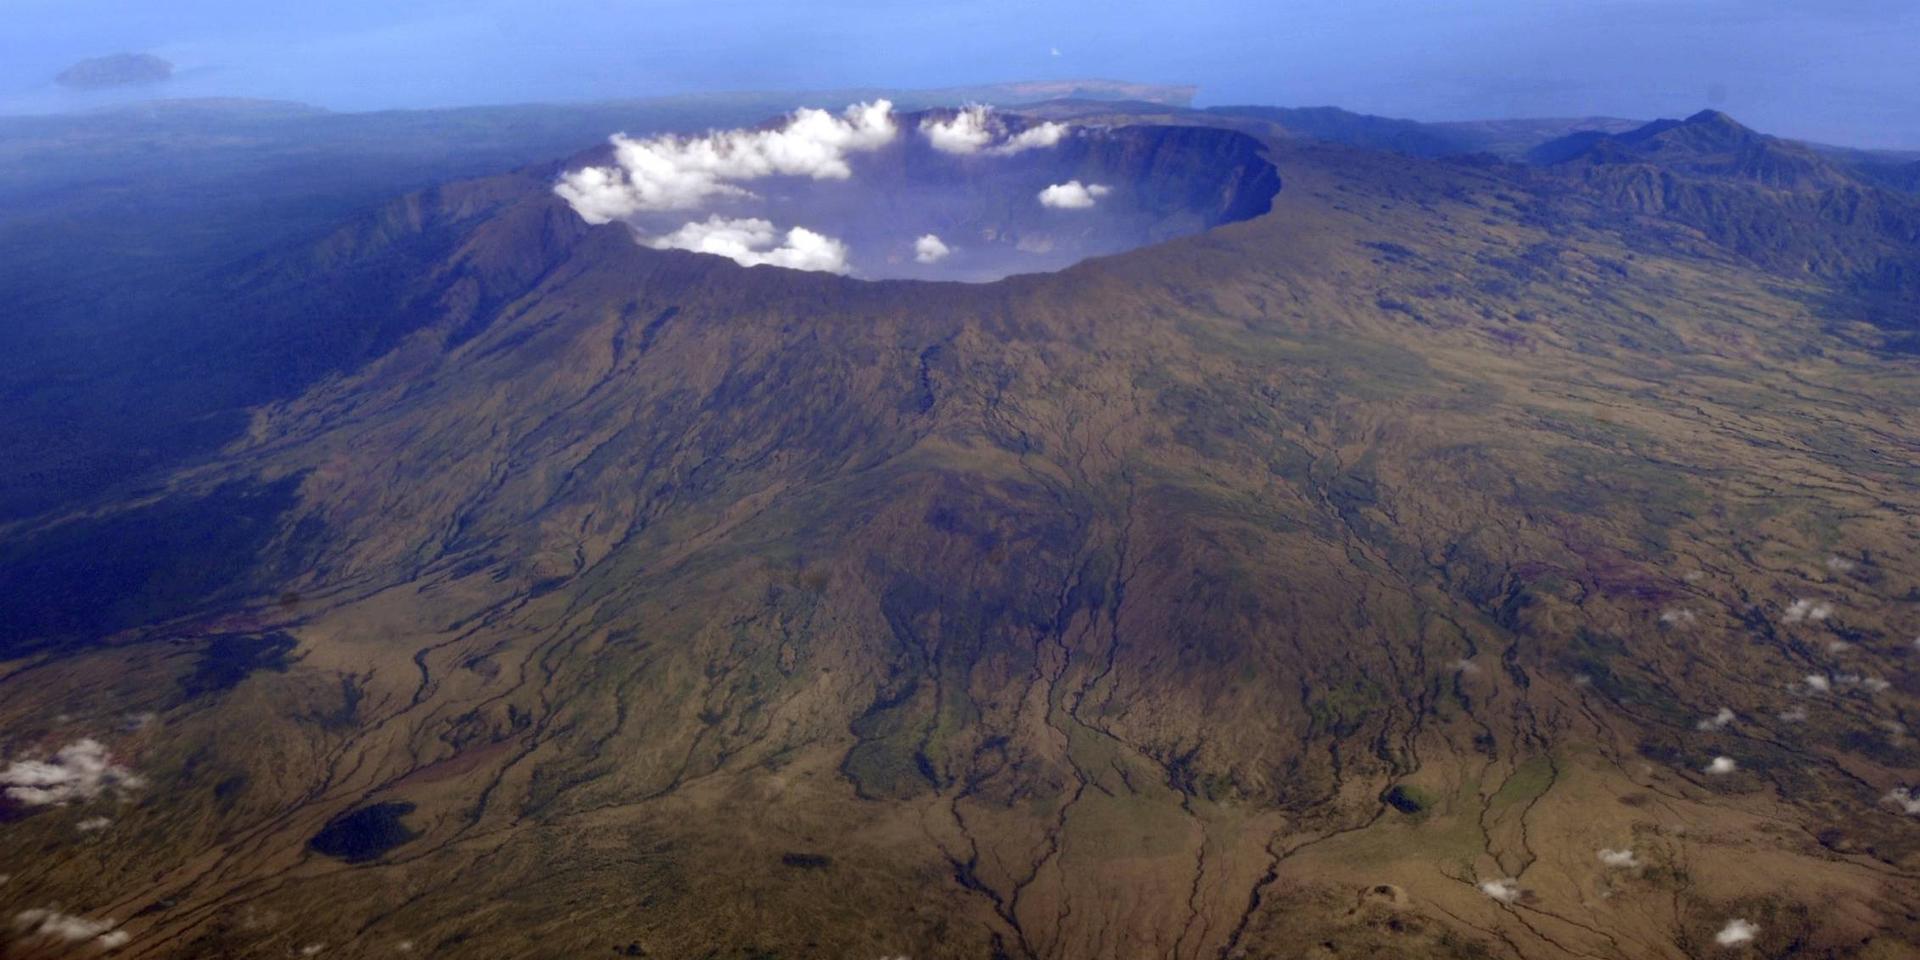 Vulkanen Tambora i indonesien hade ett utbrott 1815 som sänkte jordens medeltemperatur.